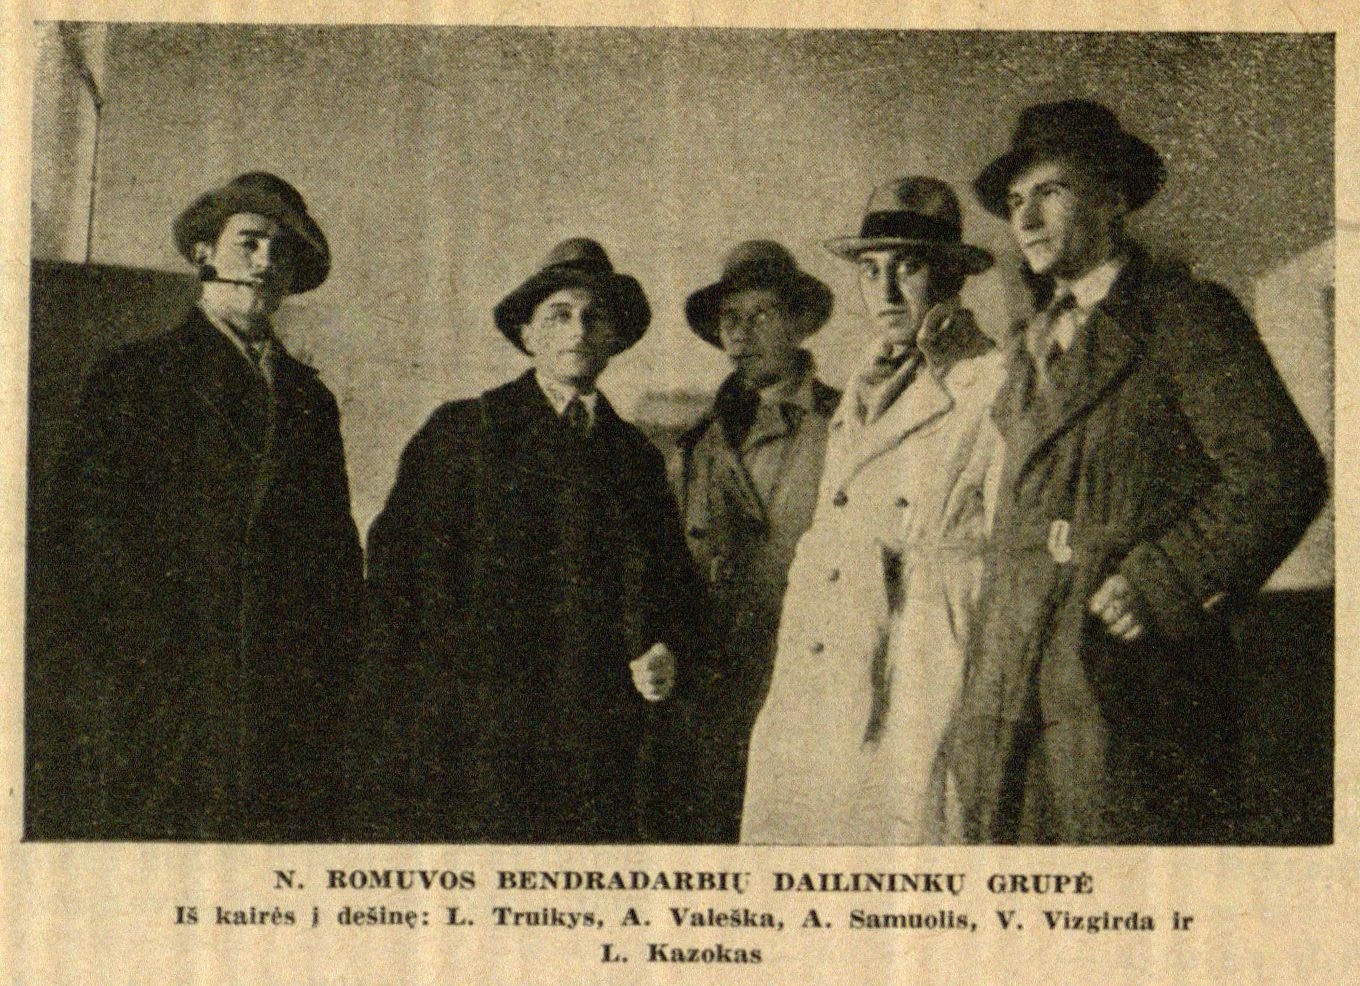 N. Romuvos bendradarbių dailininkų grupė. Iš kairės į dešinę: L. Truikys, A. Valeška, A. Samuolis, V. Vizgirda ir L. Kazokas: [nuotr. prie A. Valeškos straipsnio „Naujoji Romuva ir menas“] // Naujoji Romuva. – 1936, Nr. 40, p. 774